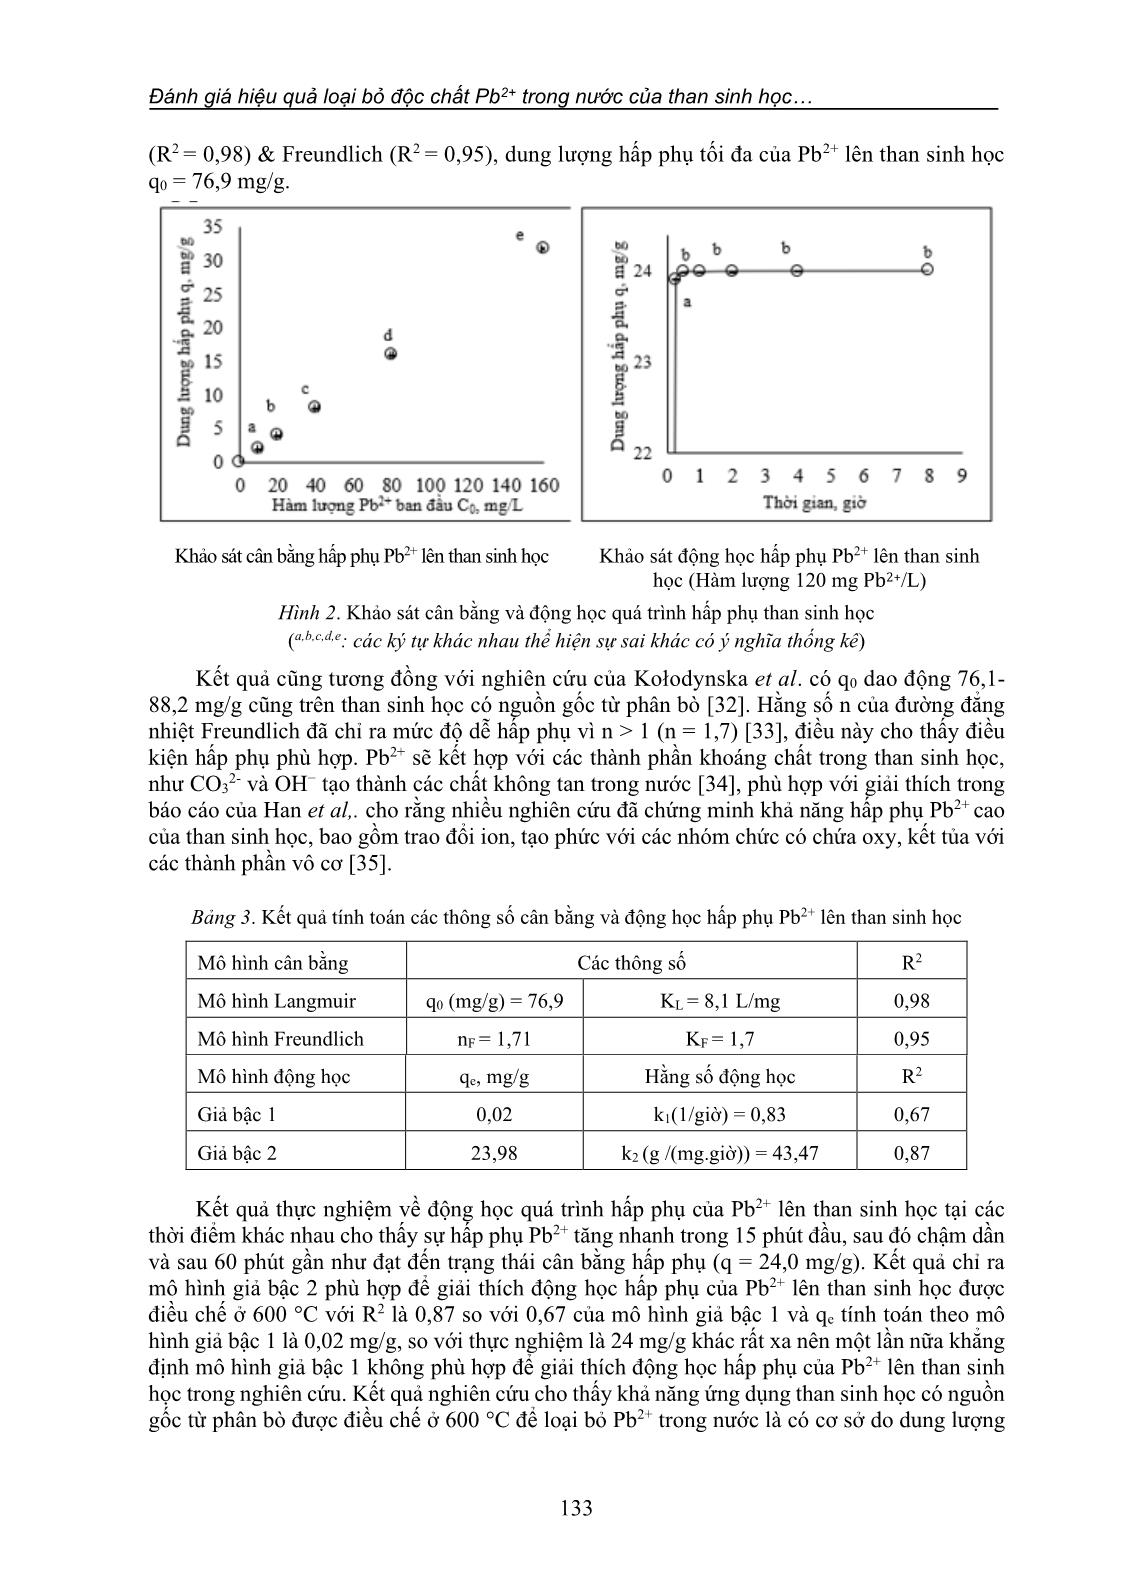 Đánh giá hiệu quả loại bỏ độc chất Pb2+ trong nước của than sinh học có nguồn gốc từ phân bò: Thử nghiệm độc tính trên cá rô phi giống (o. niloticus) trang 7